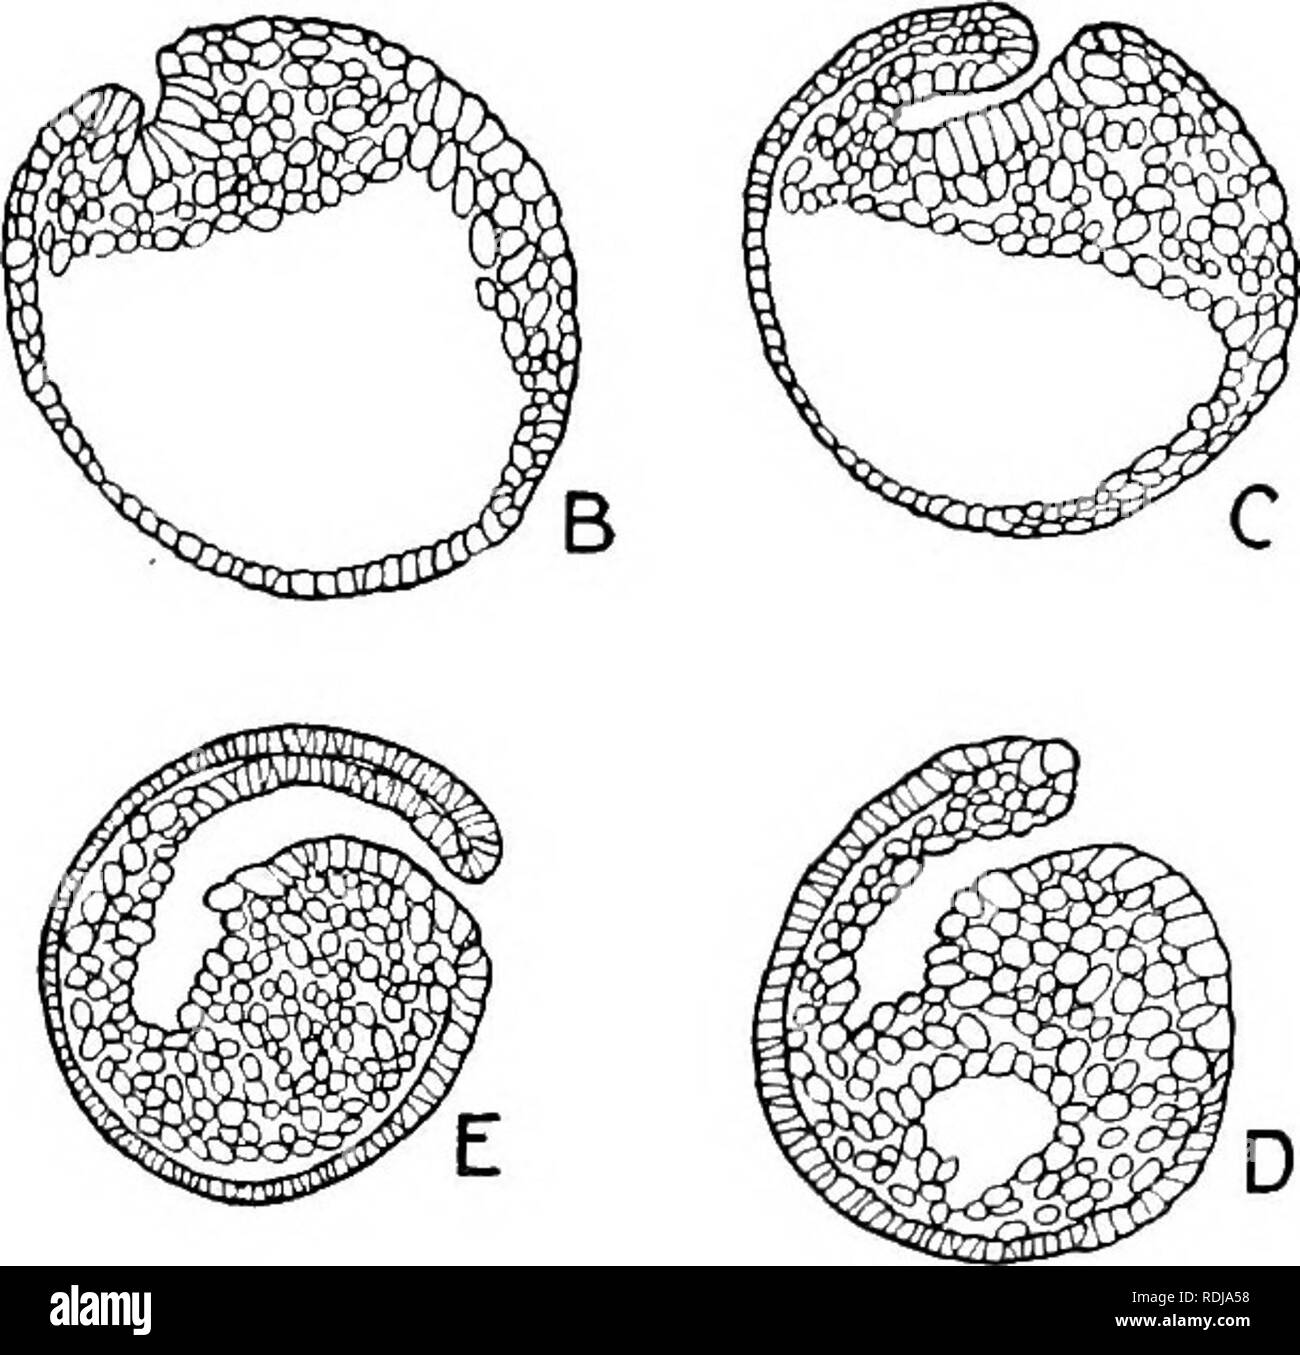 . Libro di testo di embriologia. Embriologia. Fig. 23.-Gastrulation in Petromyzon : basato su Goette's cifre (1890). Le singole sezioni sono orientati nello stesso modo come le corrispondenti sezioni nei suini. 18 e 21. tula notevolmente sul abapical lato dell'equatore (circa 25°, Kopsch) e proprio al confine del grande-celled regione. Appare sul lato dell'uovo su cui il tetto di blastula è in genere piuttosto più sottile è altrove. Questa scanalatura di involuzione, come si vede in una vista superficiale dell'uovo, si estende lateralmente e come fa in modo assume una curvatura crescentica (Fig. 24, h). Il Foto Stock